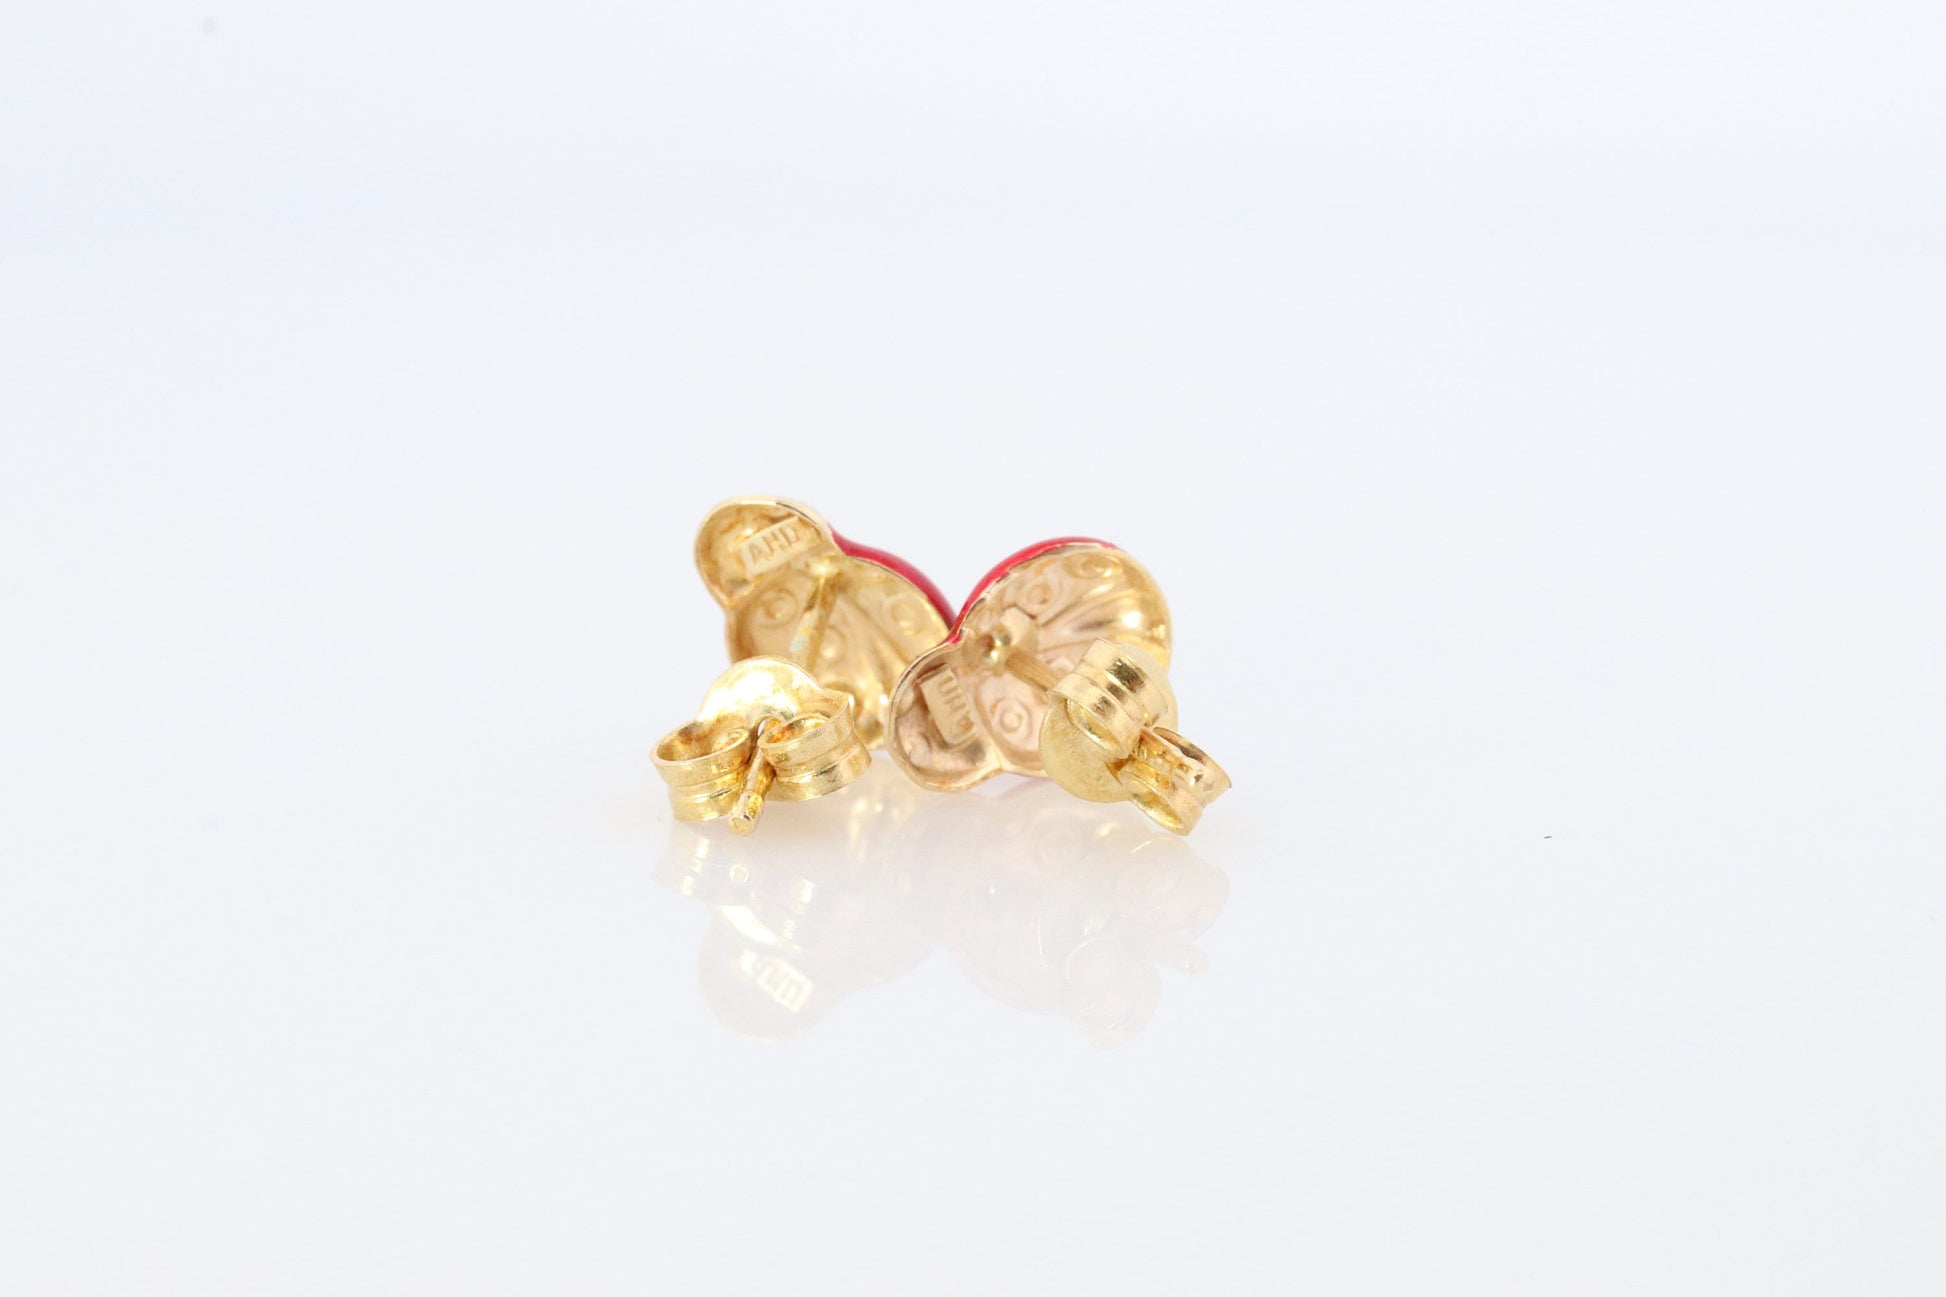 LADYBUG earrings. 14k Yellow Gold Enamel Painted Lady bug stud earring. Fun Ladybug studs.